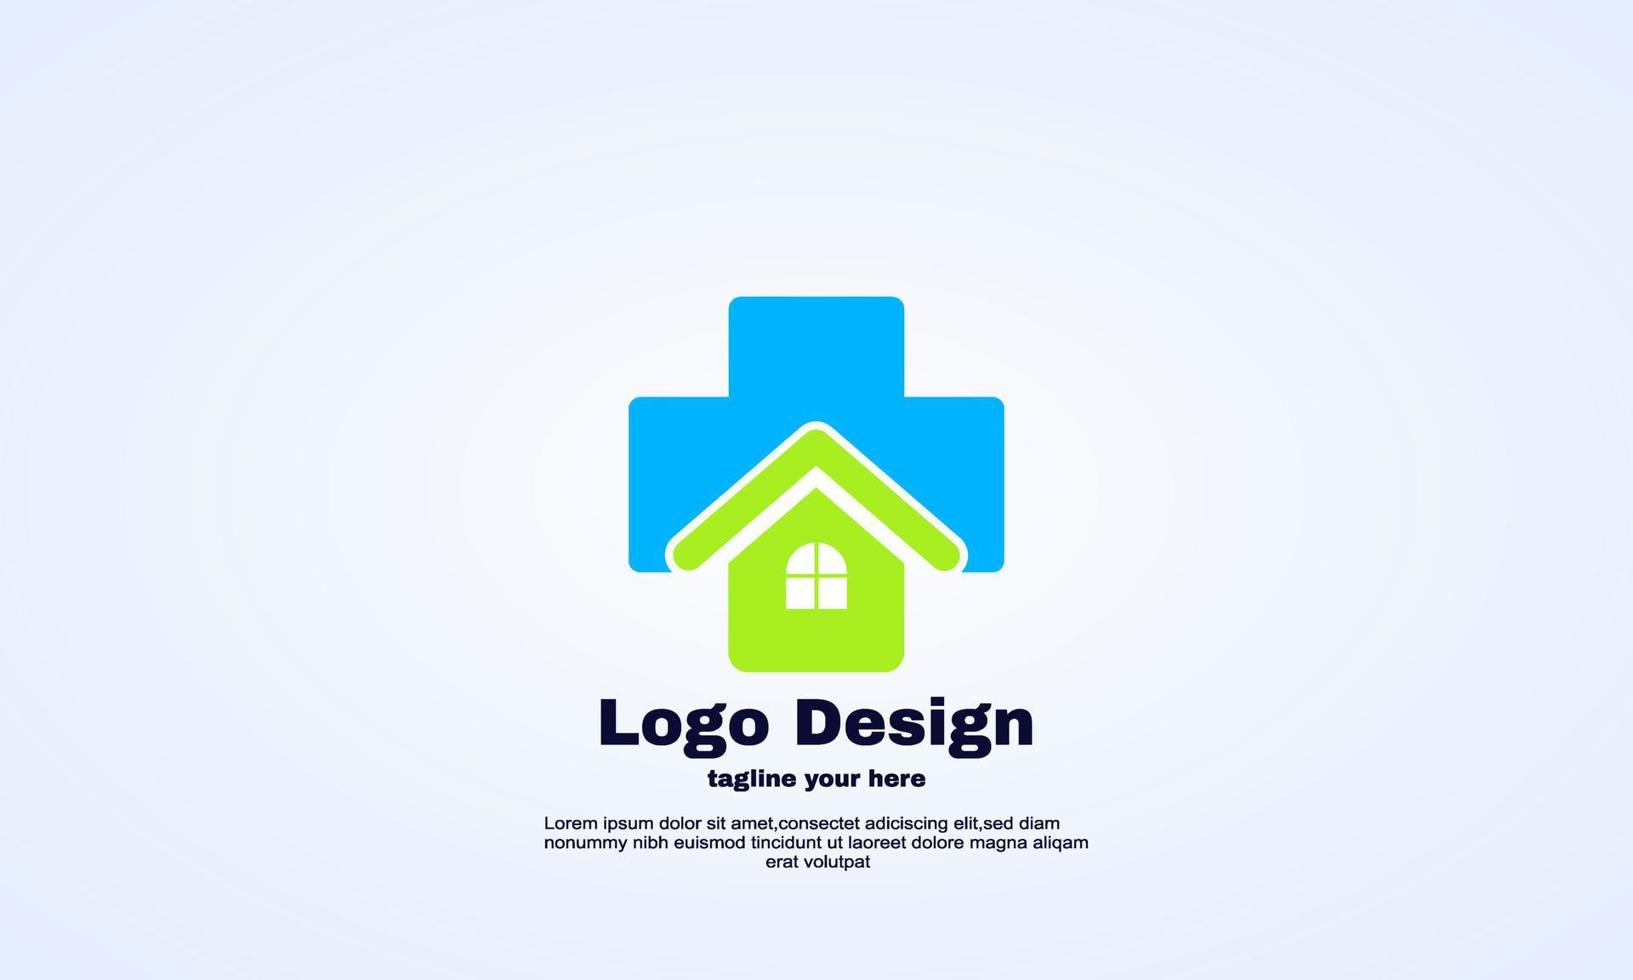 elemento di vettore di progettazione del logo della casa medica dell'illustratore di stock